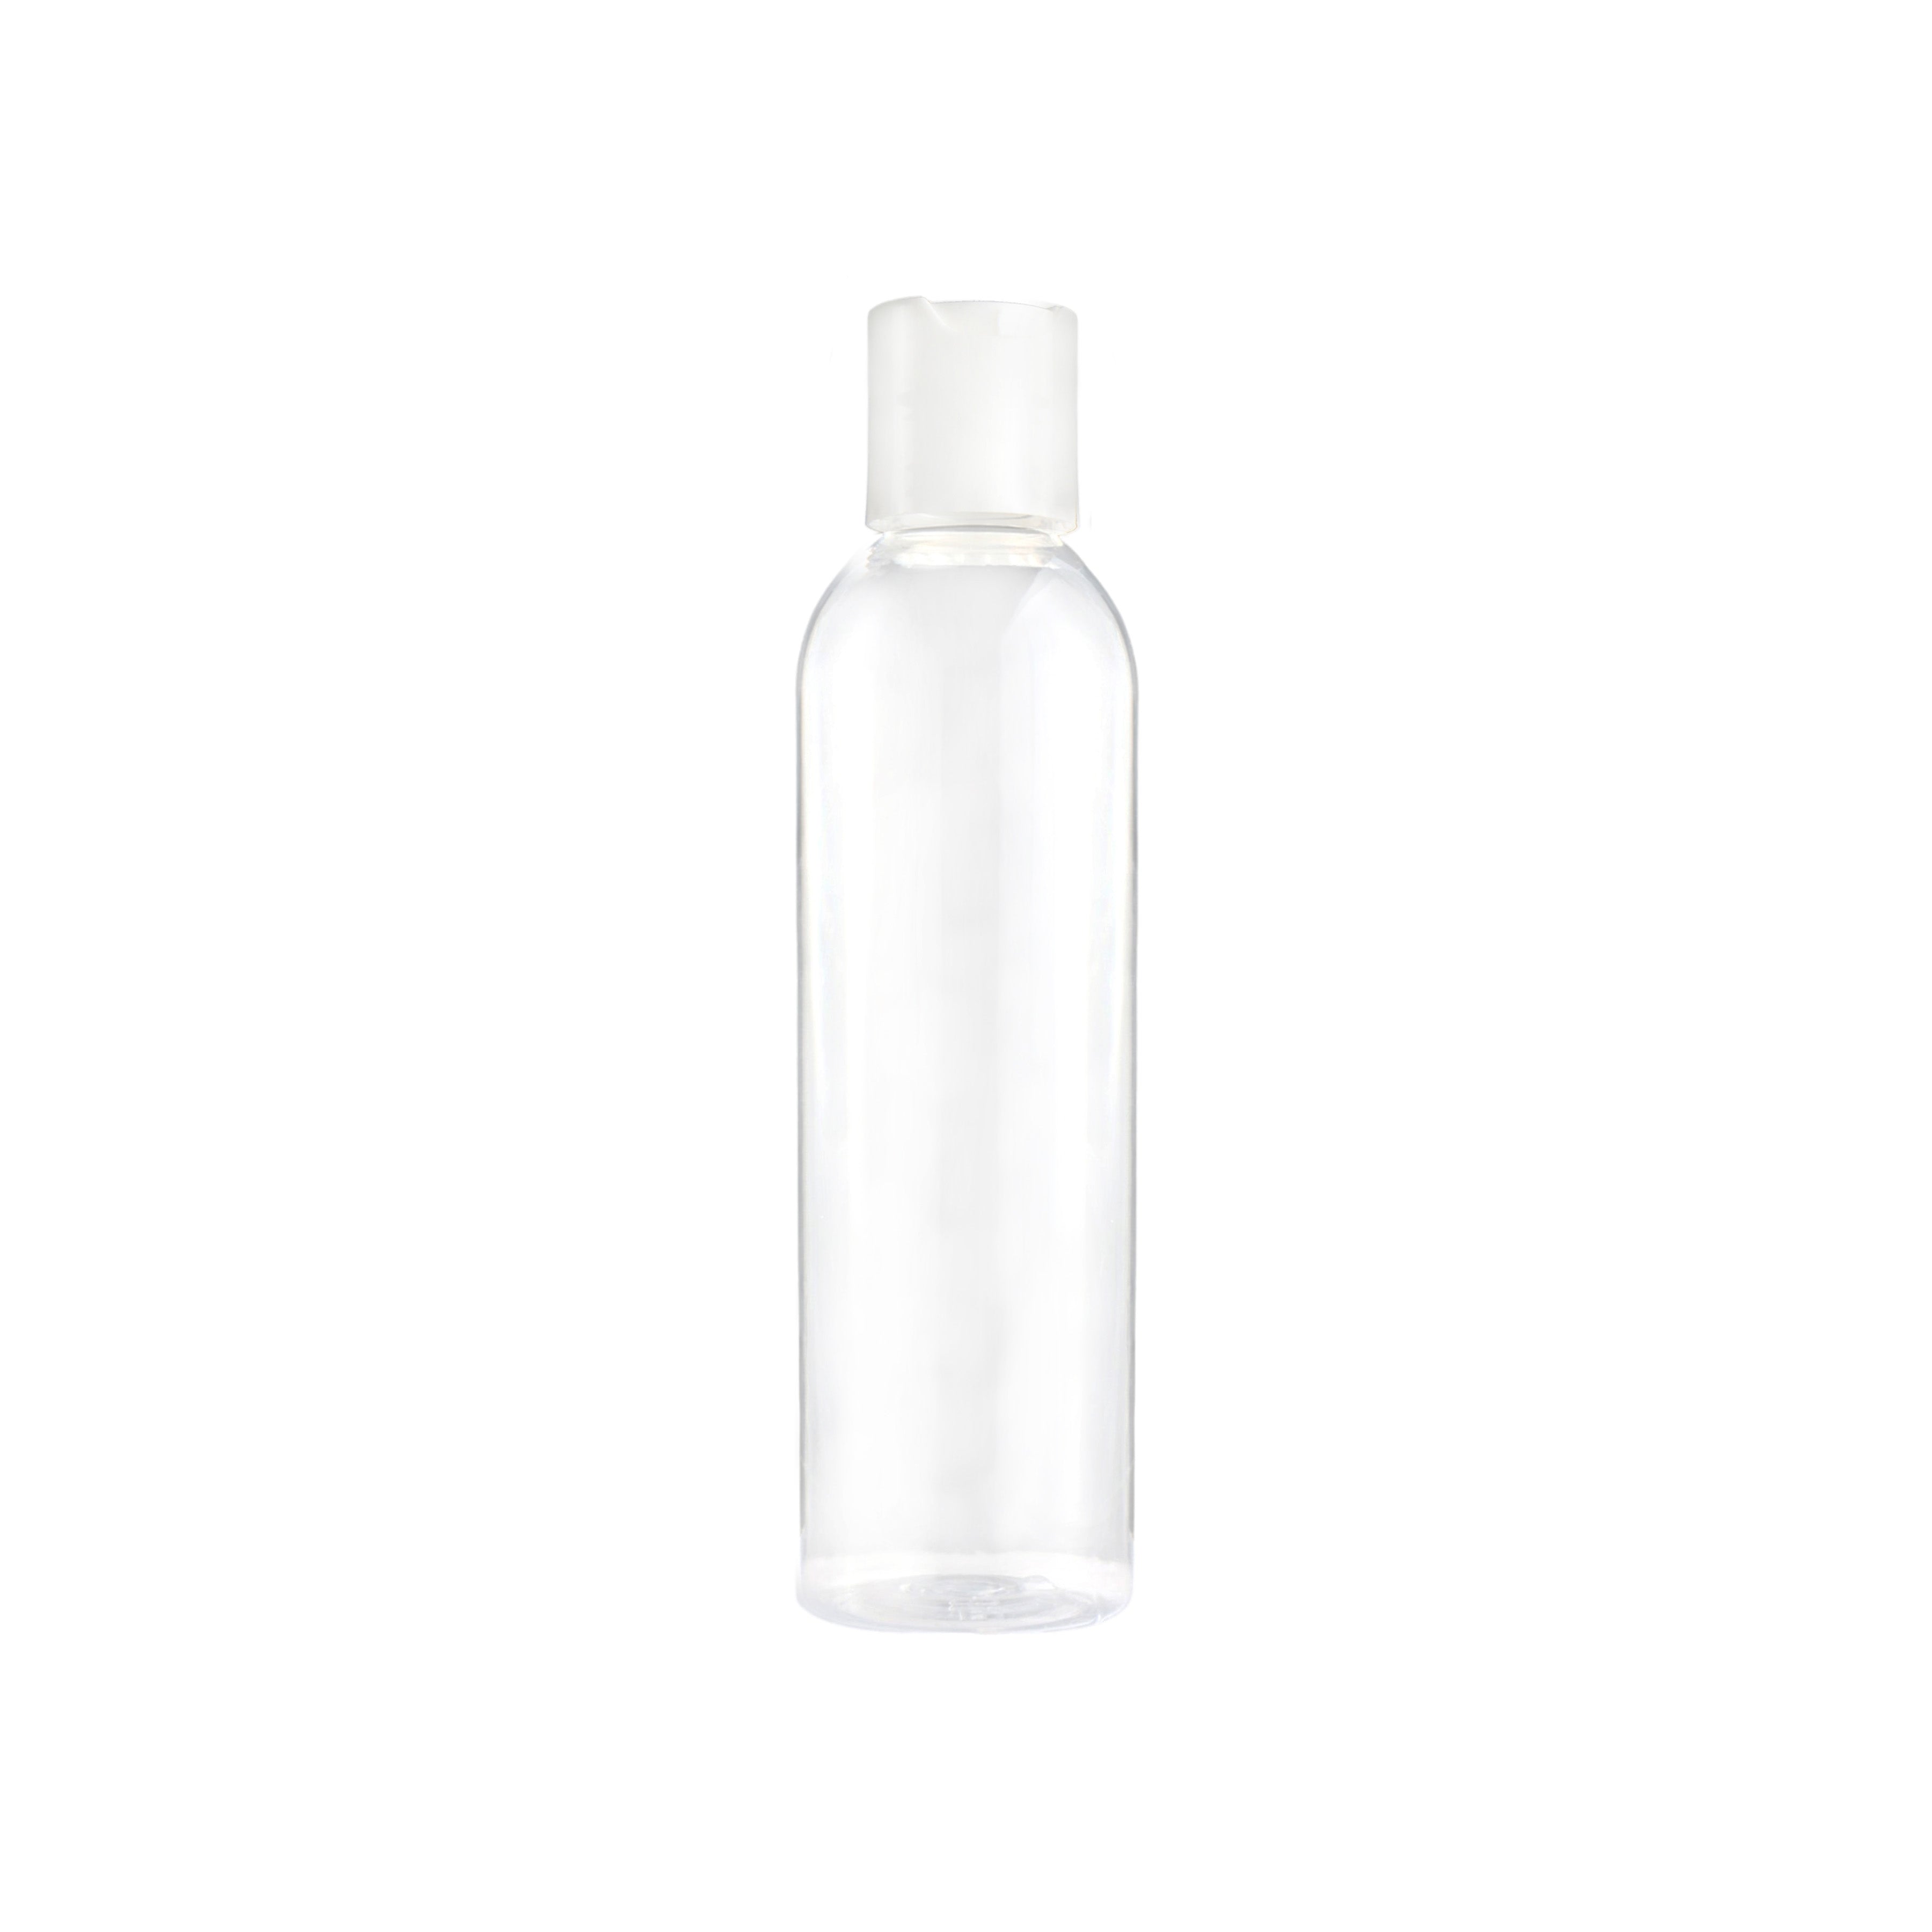 200ml Bottle with Disc-Top Lotion Flip Lid PET Plastic ALT-1607